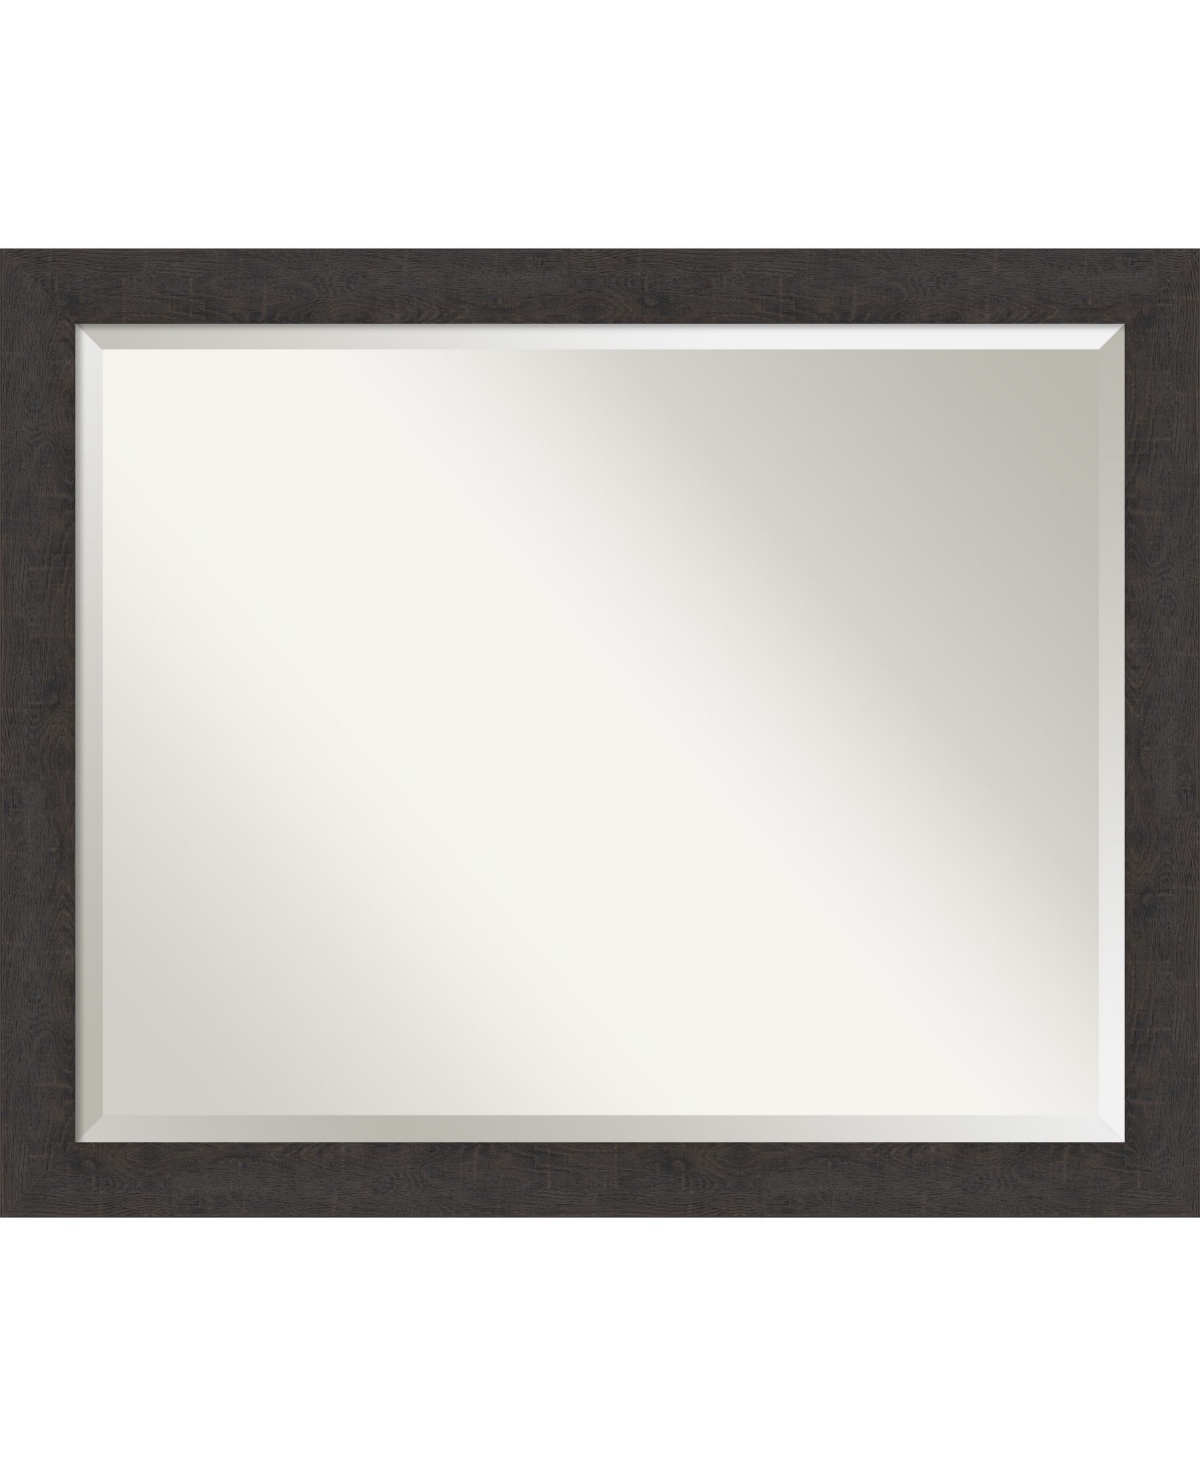 Rustic Plank Framed Bathroom Vanity Wall Mirror, 31.25" x 25.25" - Dark Brown